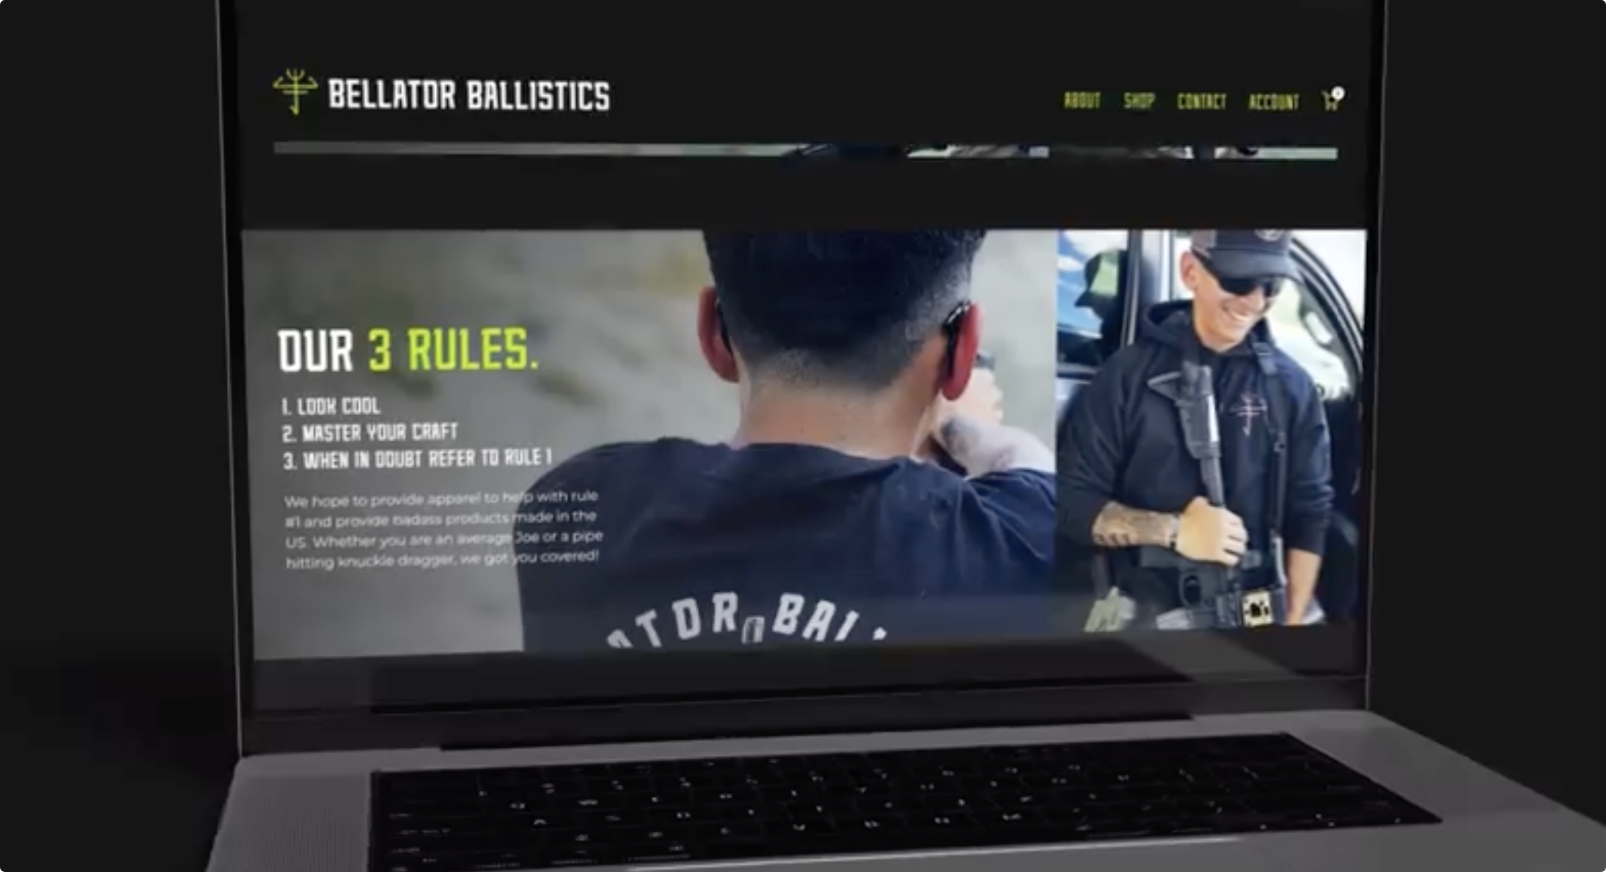 Bellator Ballistics website homepage design, tactical branding